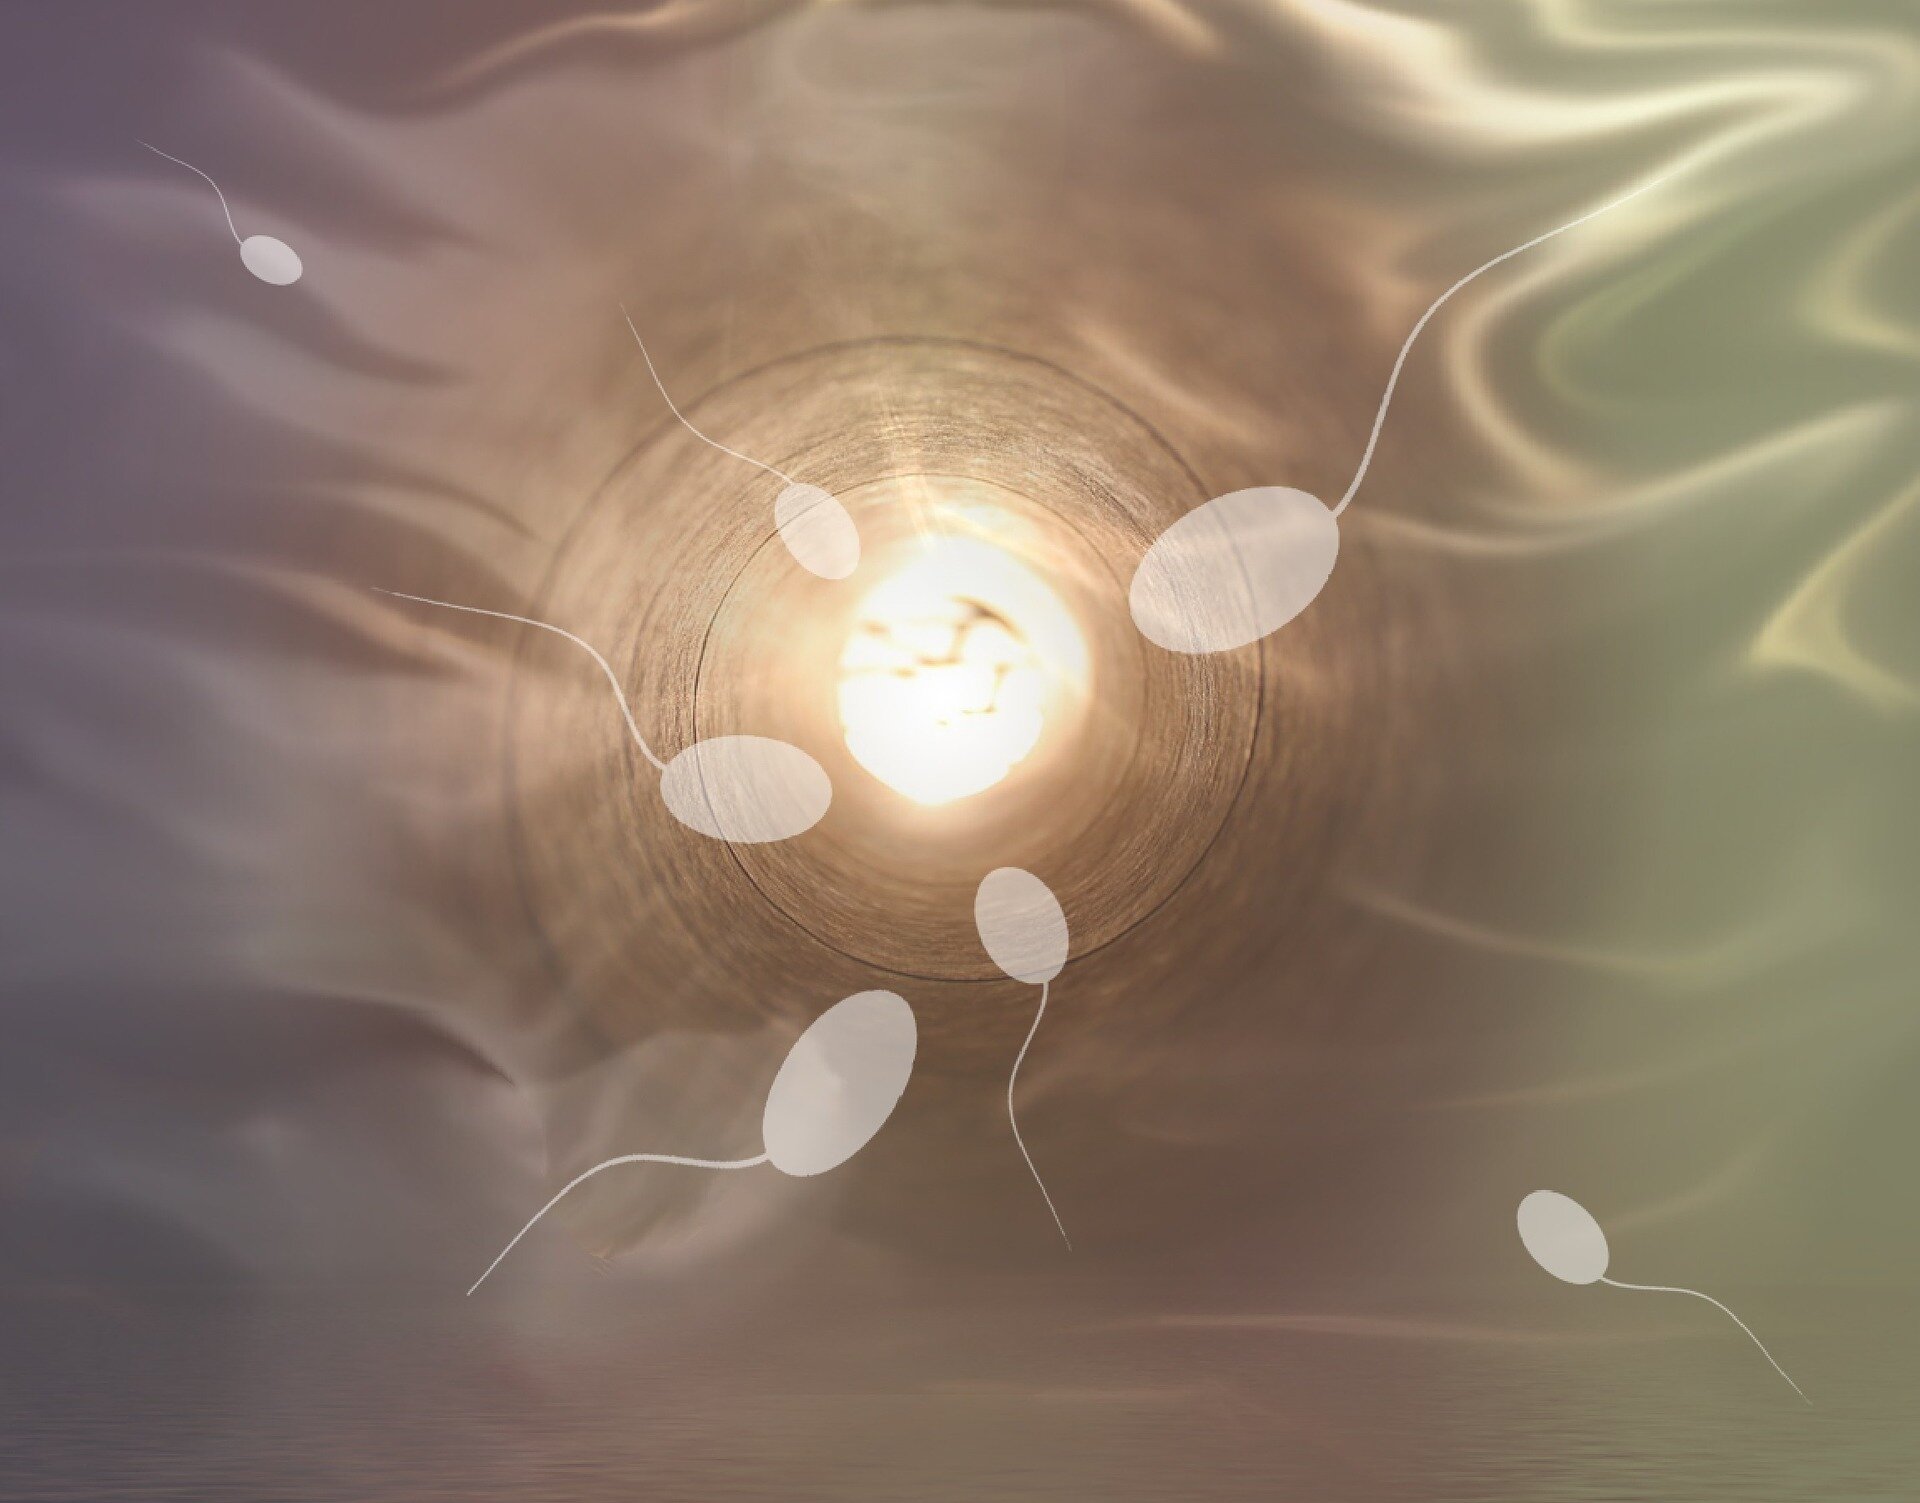 Исследователи не нашли доказательств того, что количество сперматозоидов падает